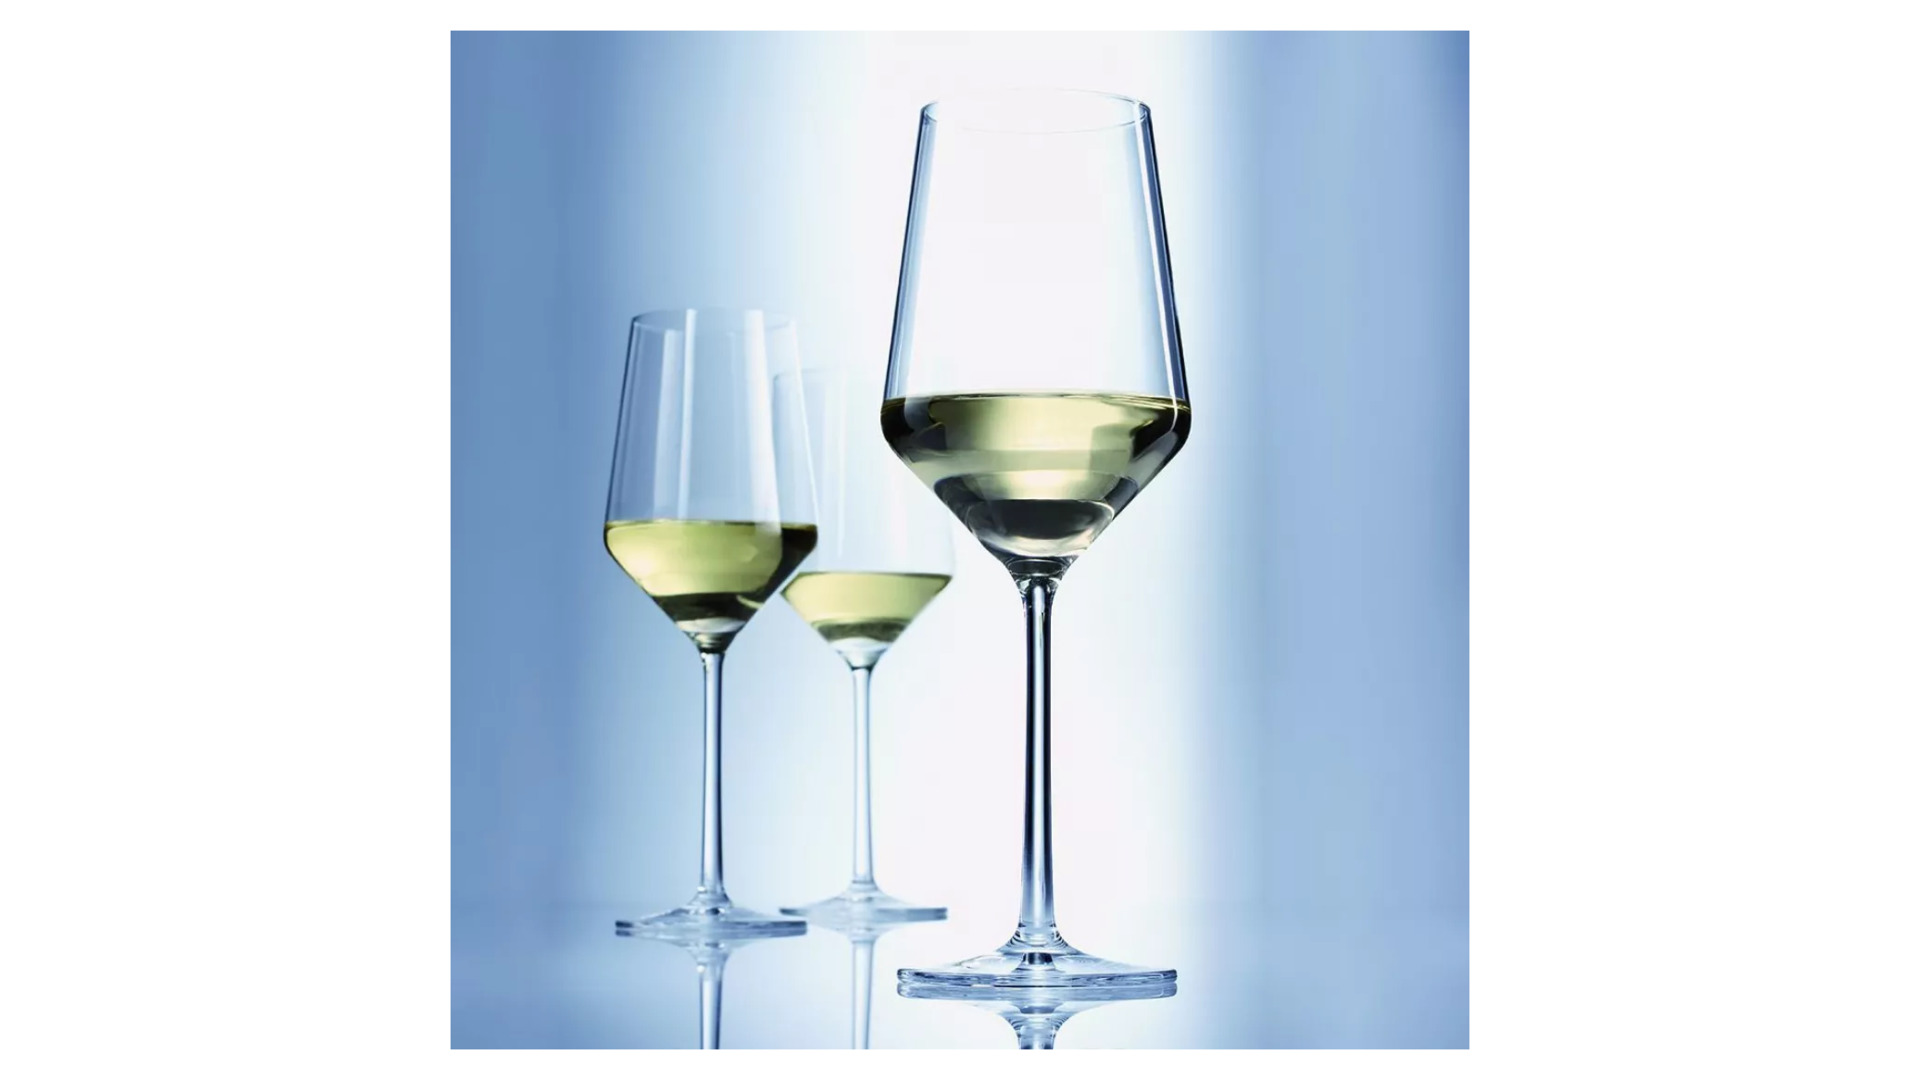 Набор бокалов для белого вина Zwiesel Glas Pure Sauvignon Blanc 408 мл, 2 шт, стекло